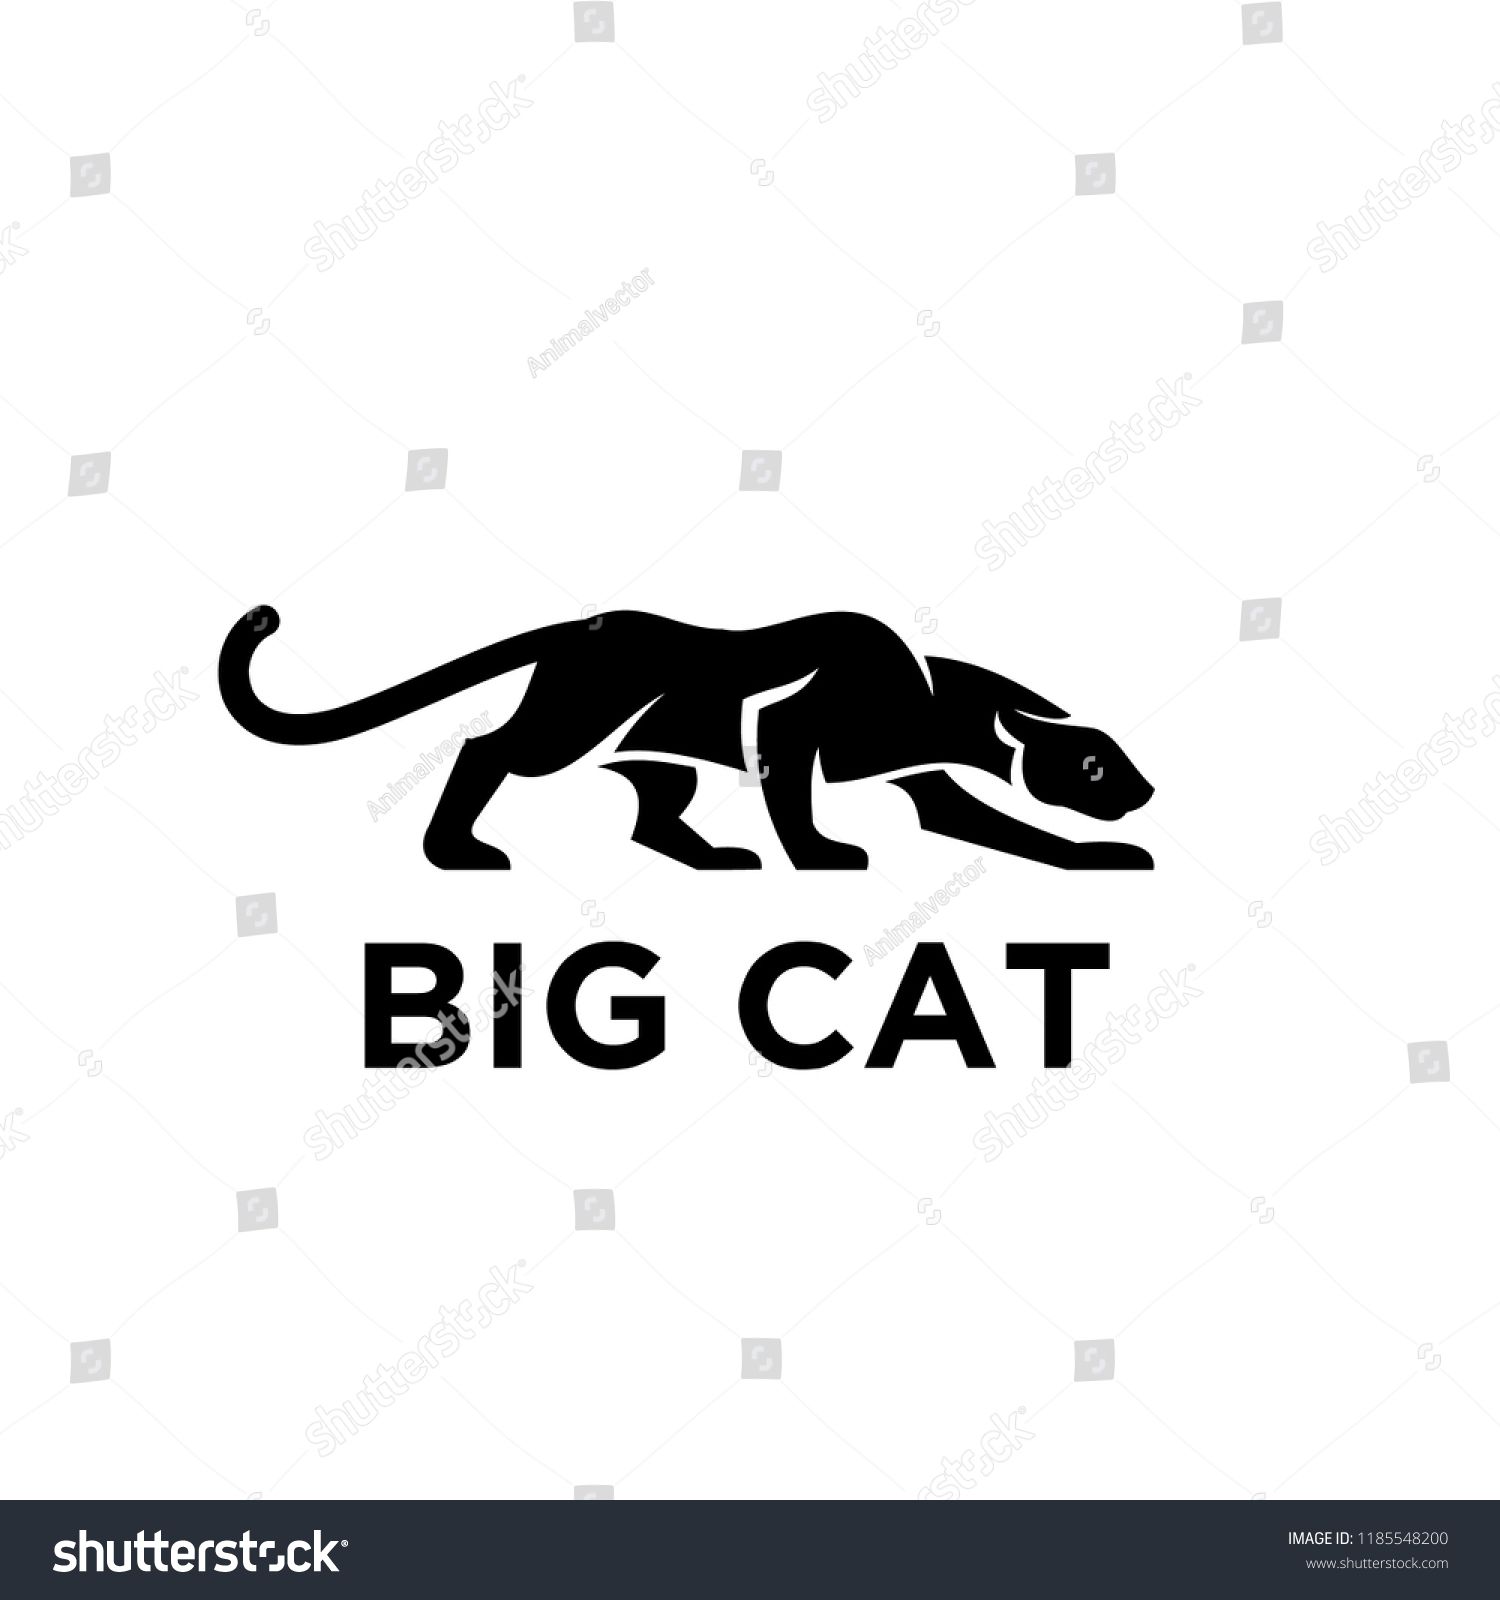 big-cats # 115220